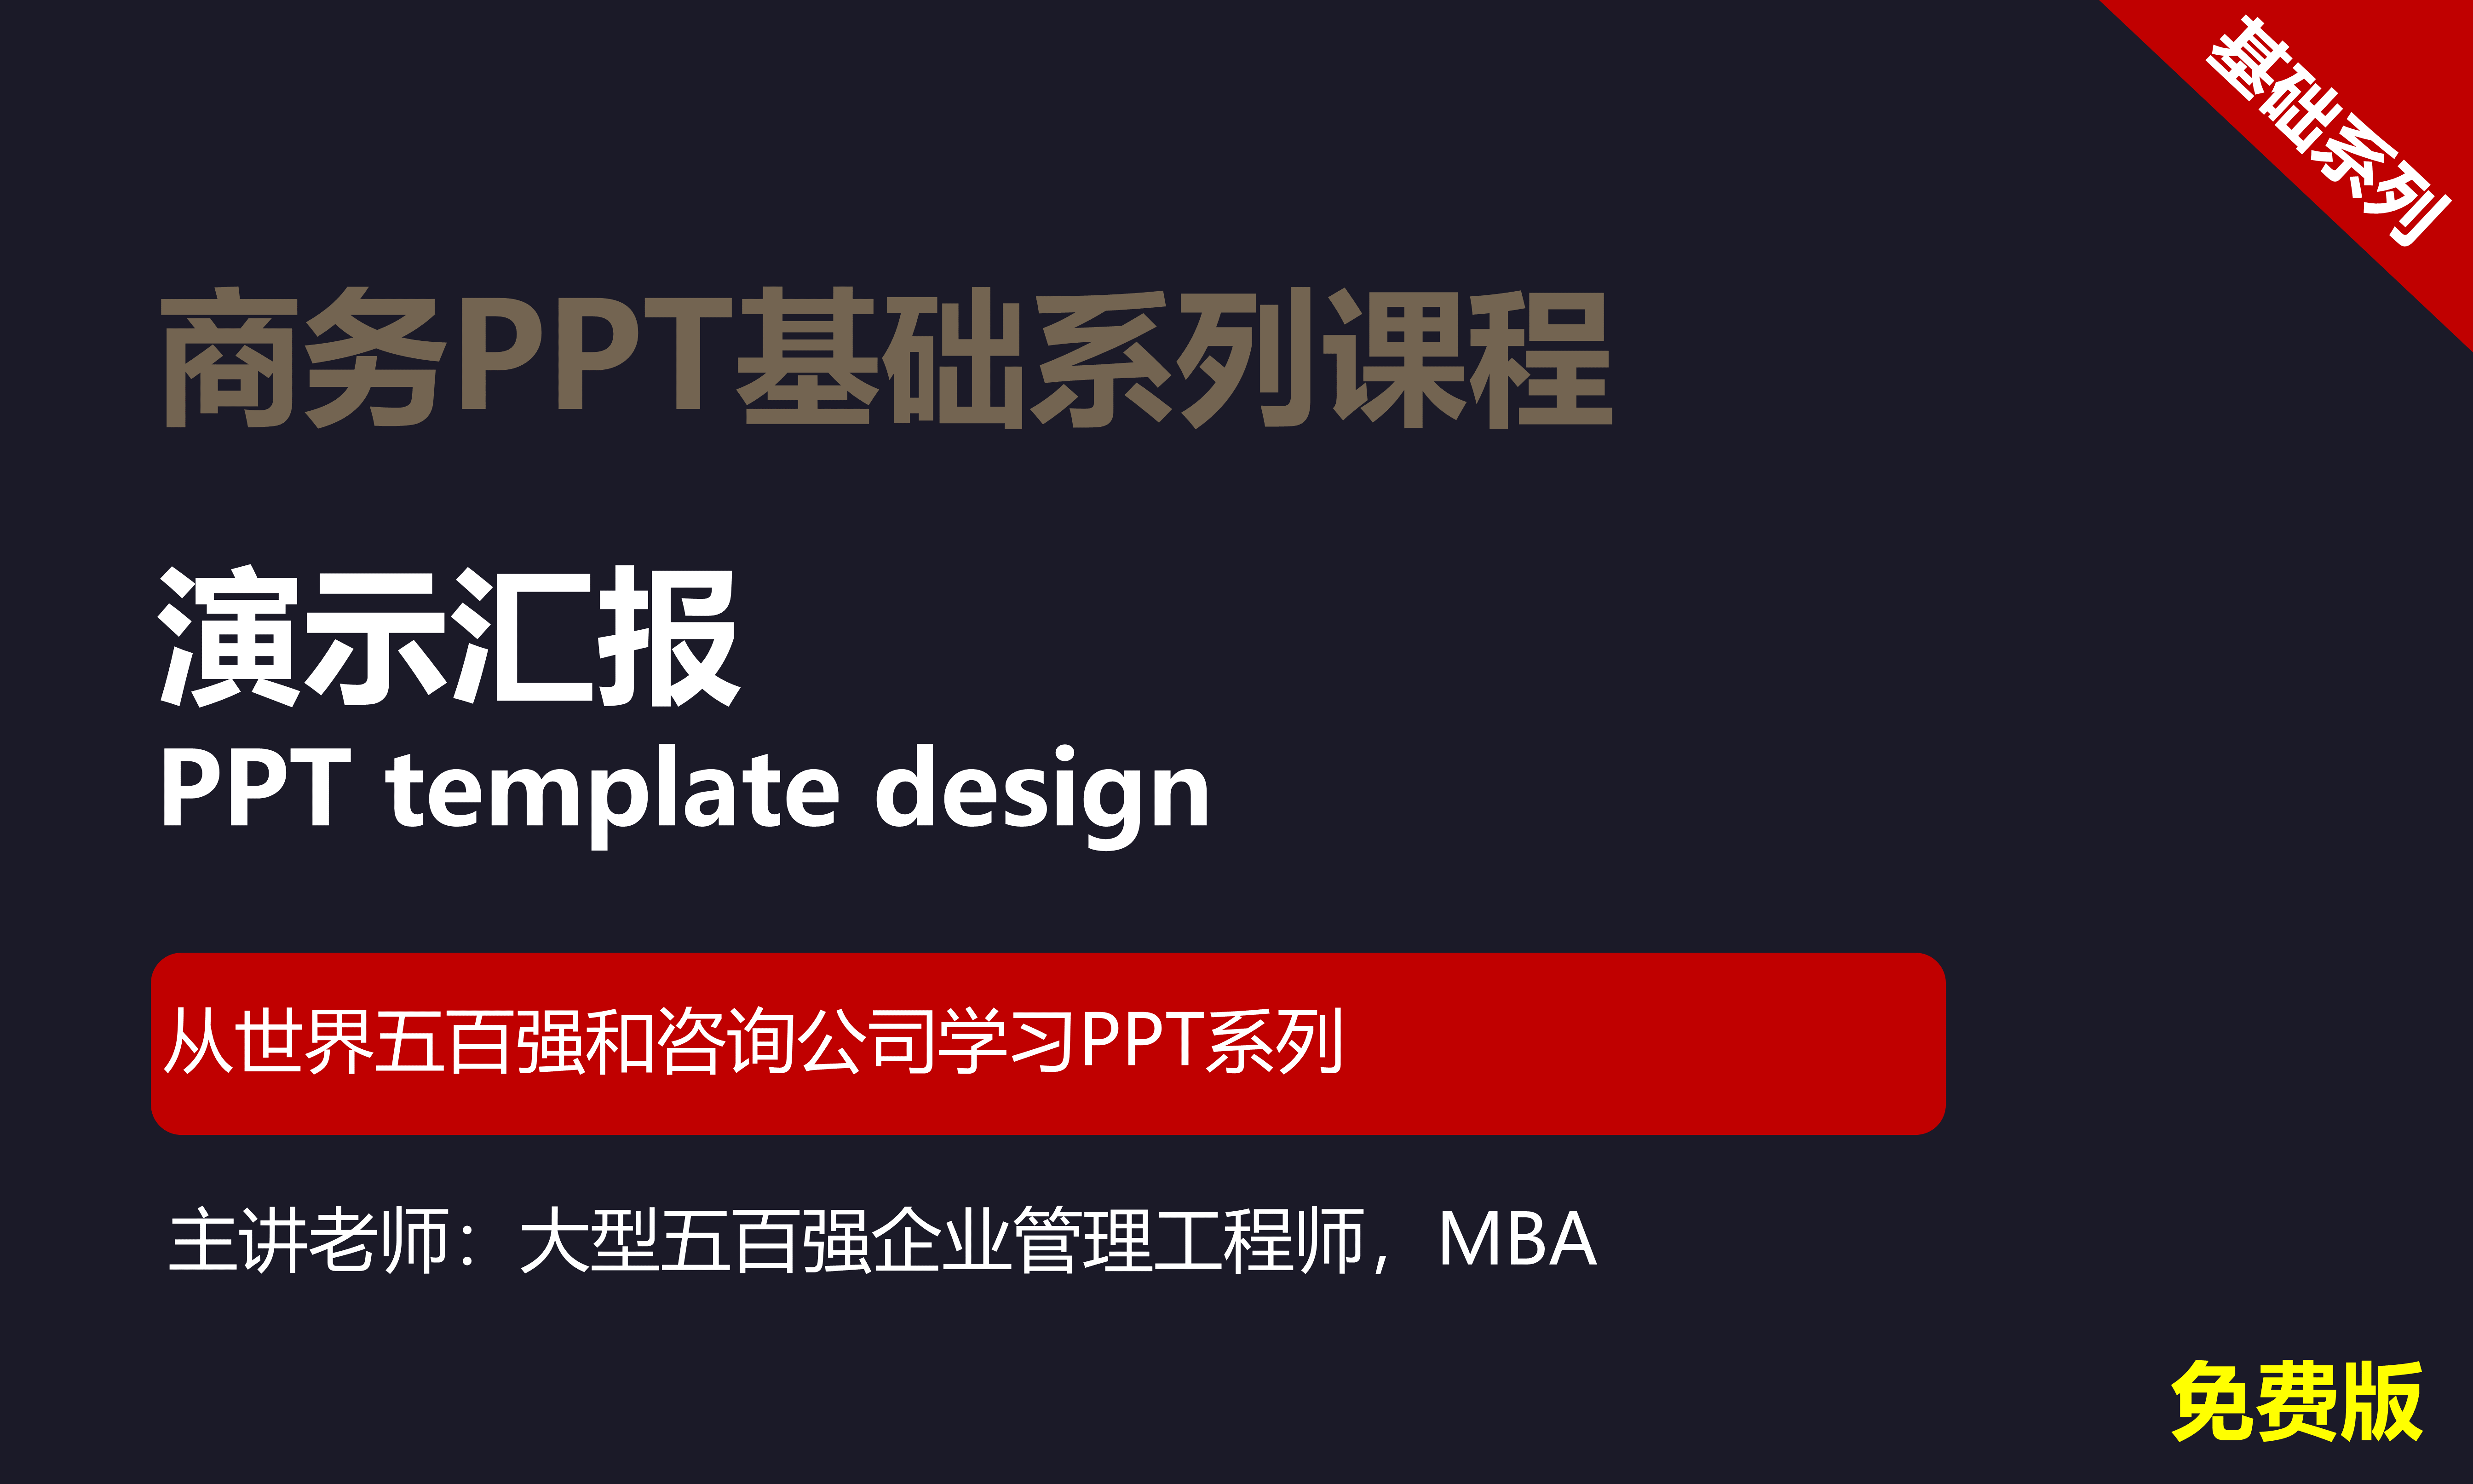 【司马懿】商务PPT设计基础篇03【演示汇报】免费版